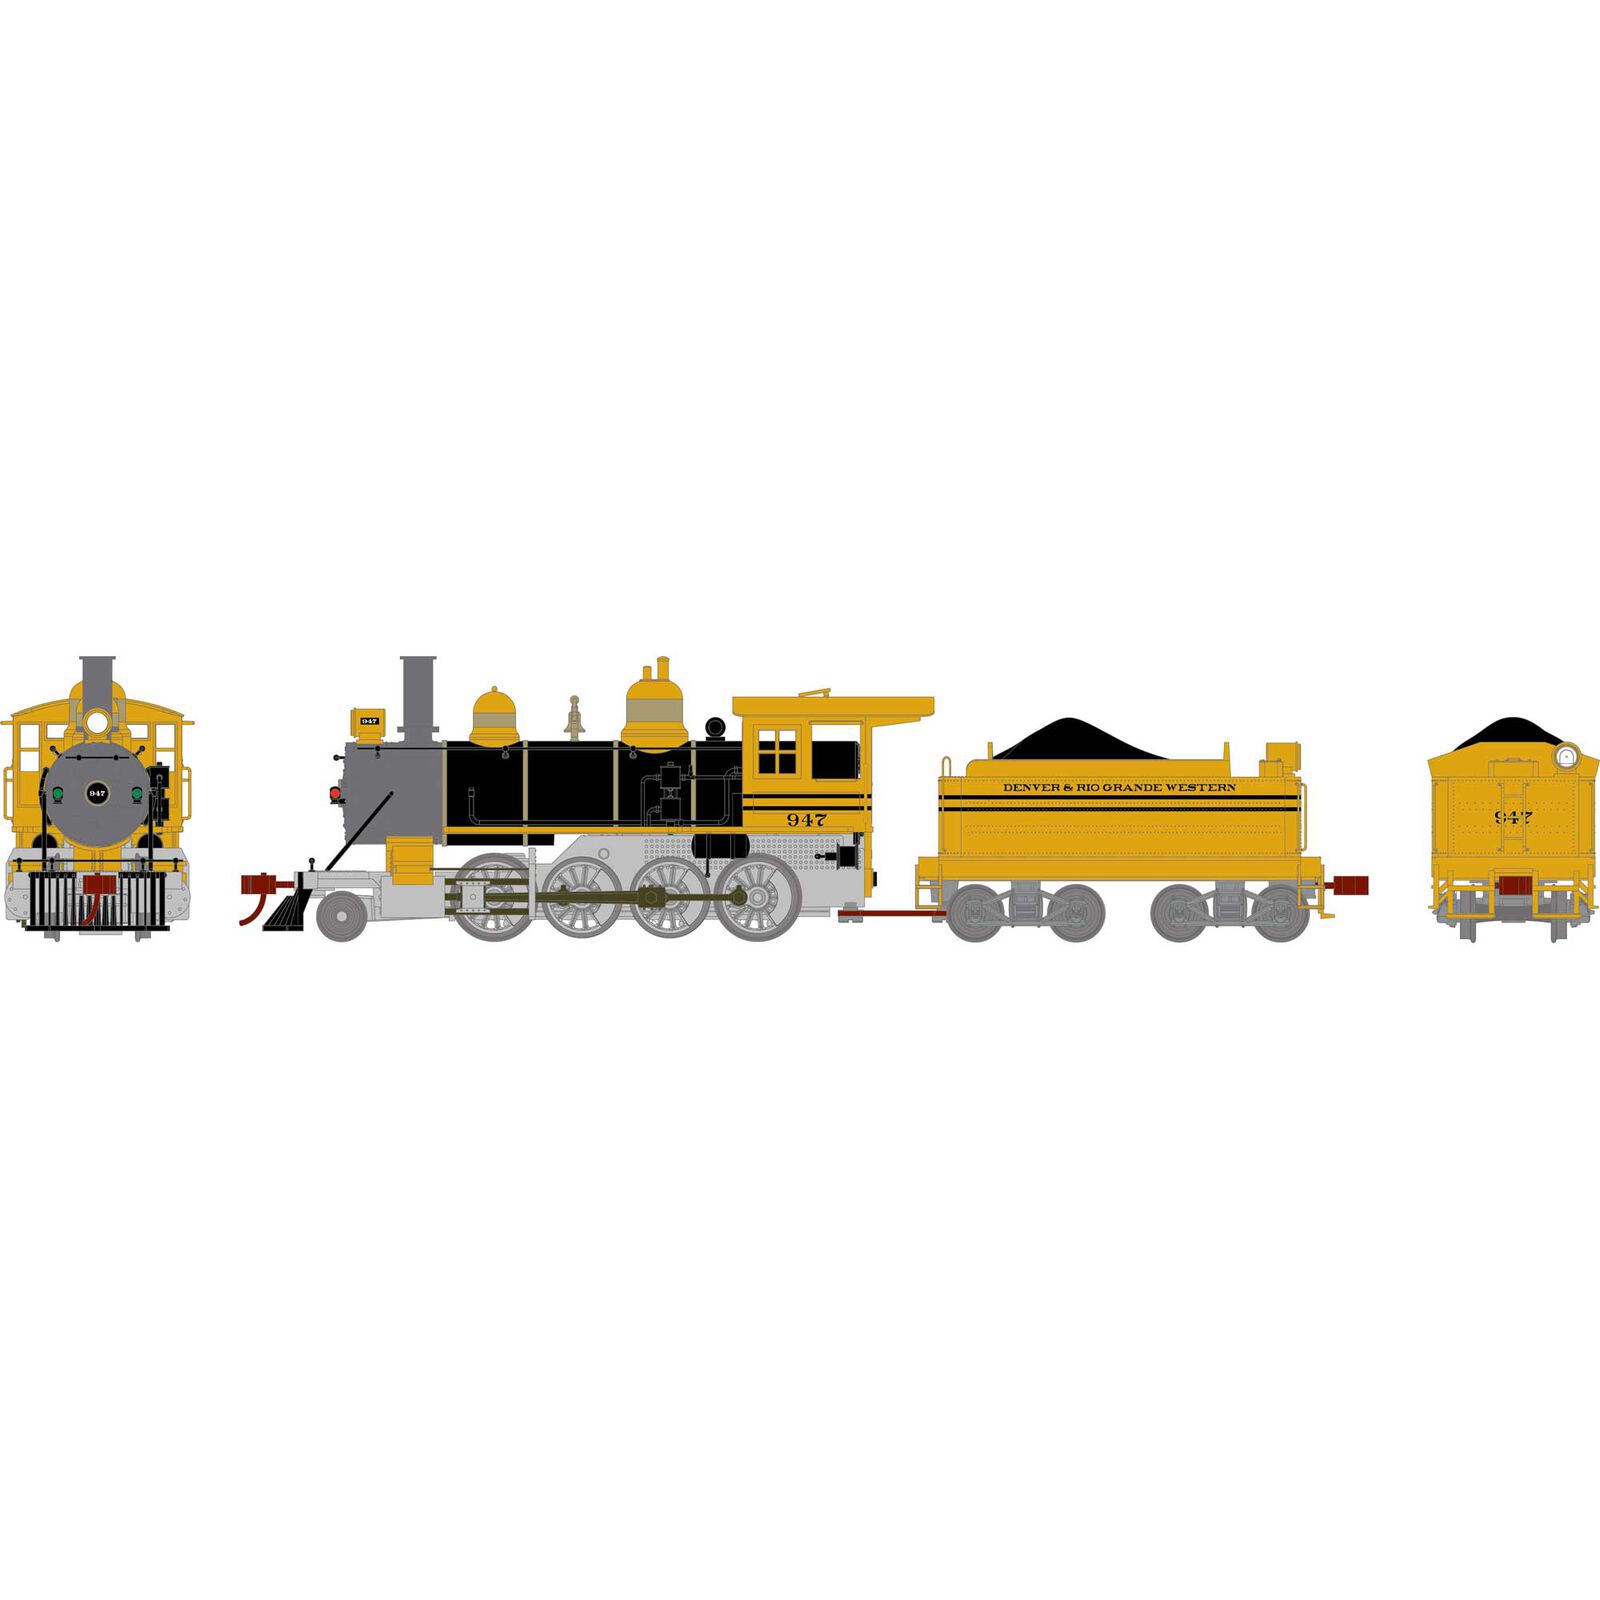 HO Old Time 2-8-0 Locomotive, D&RGW #947